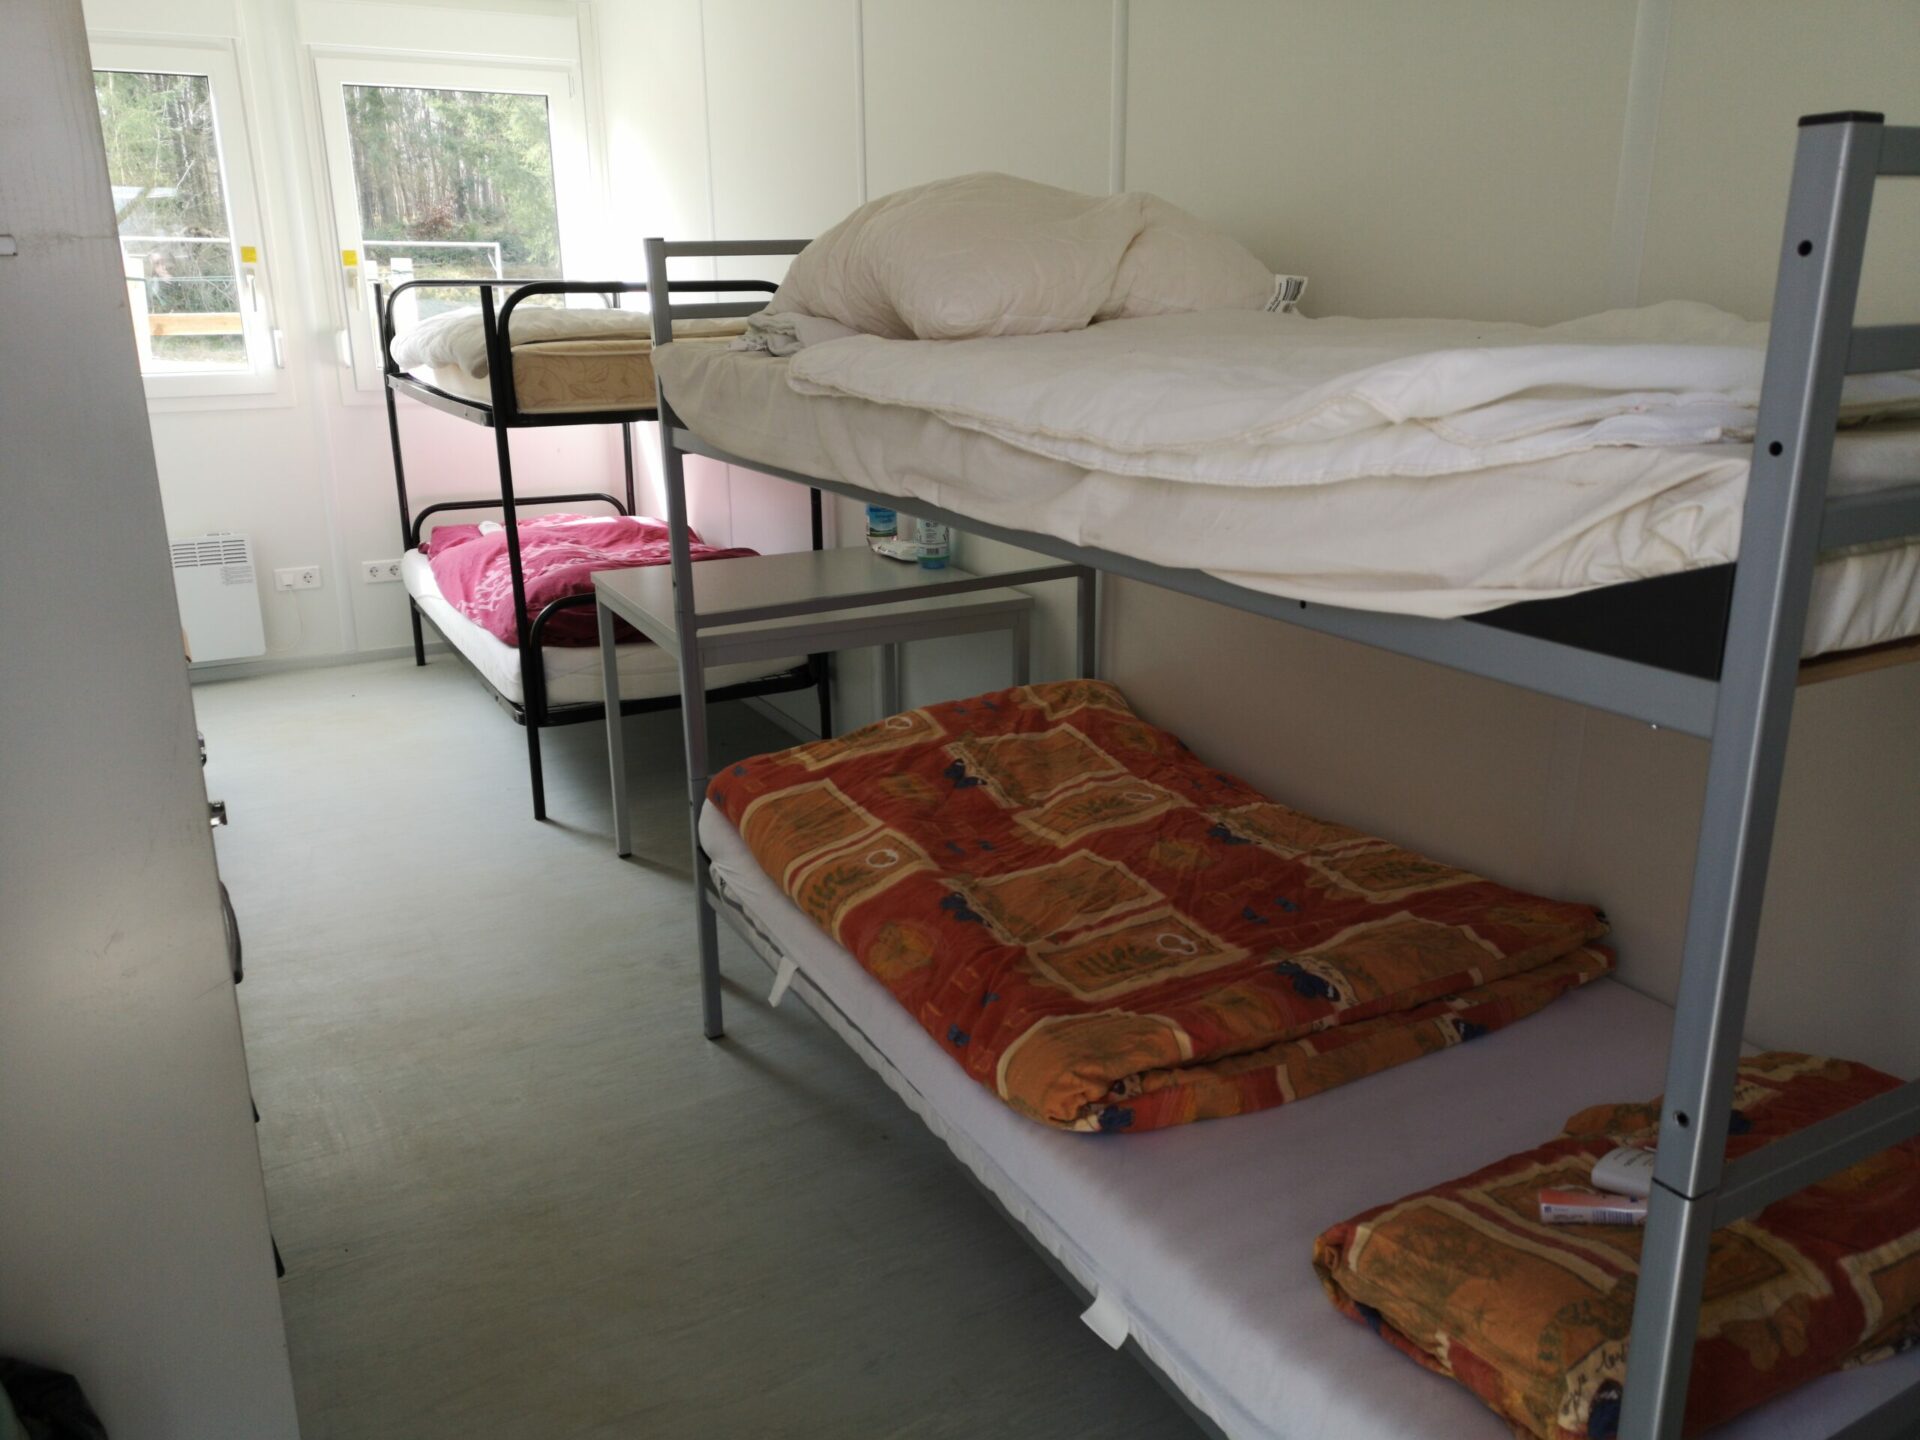 Handwerker Camp Krälingen Übernachtungsmöglichkeiten für Handwerker Helfer Ahrtal Flutkatastrophe